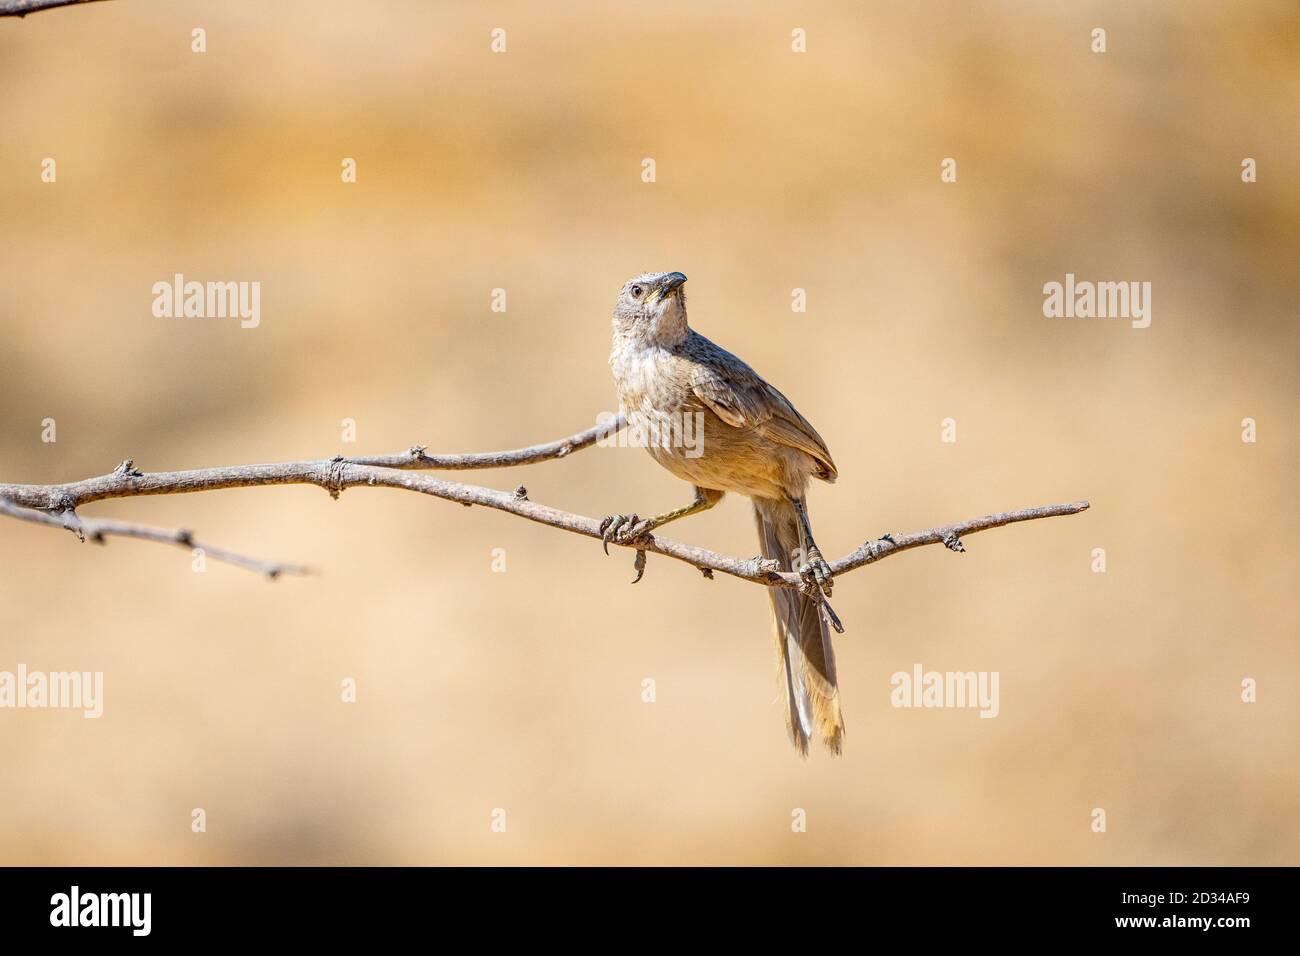 Le babyler arabe (Argya squamiceps) est un oiseau de passereau. C'est un oiseau résident de nidification communautaire de broussailles arides au Moyen-Orient qui vit en craie Banque D'Images